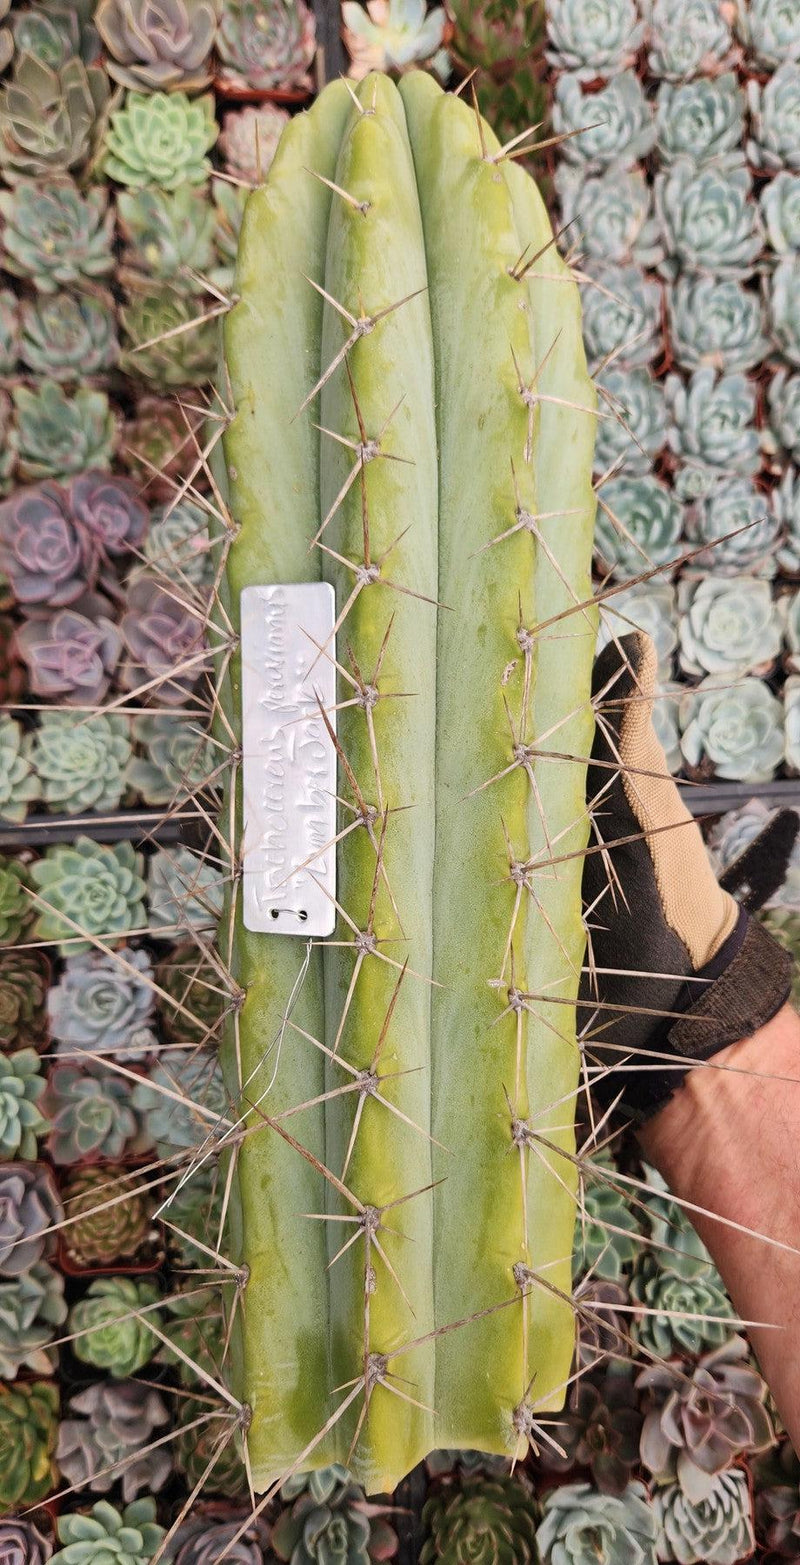 #EC97 EXACT Trichocereus Peruvianus "Lumberjack" Cactus Cuttings